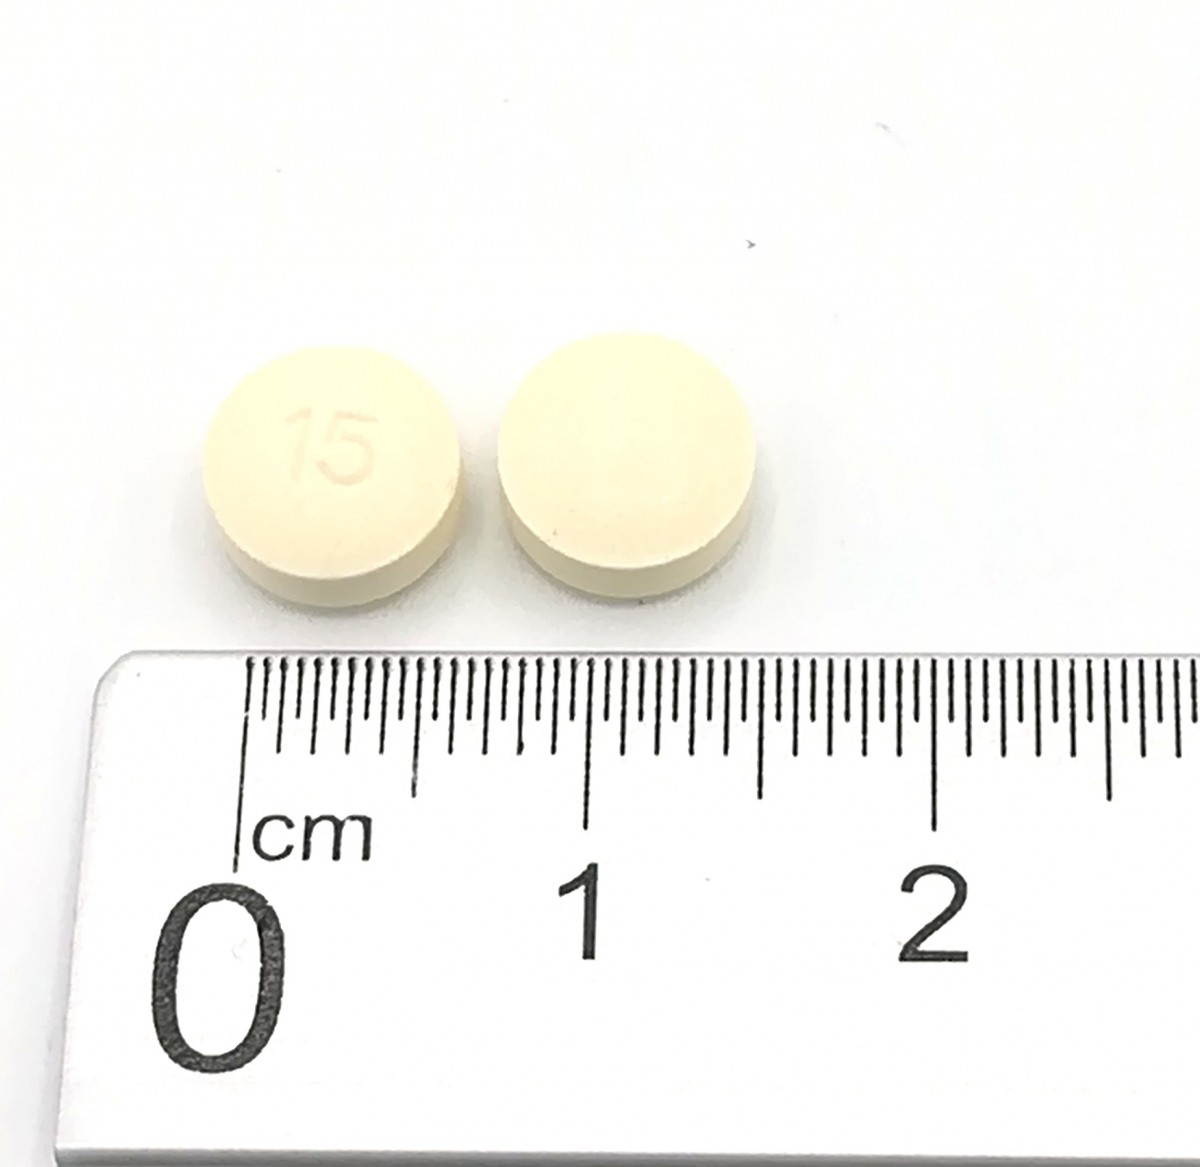 ARIPIPRAZOL NORMON 15 MG COMPRIMIDOS EFG , 28 comprimidos fotografía de la forma farmacéutica.